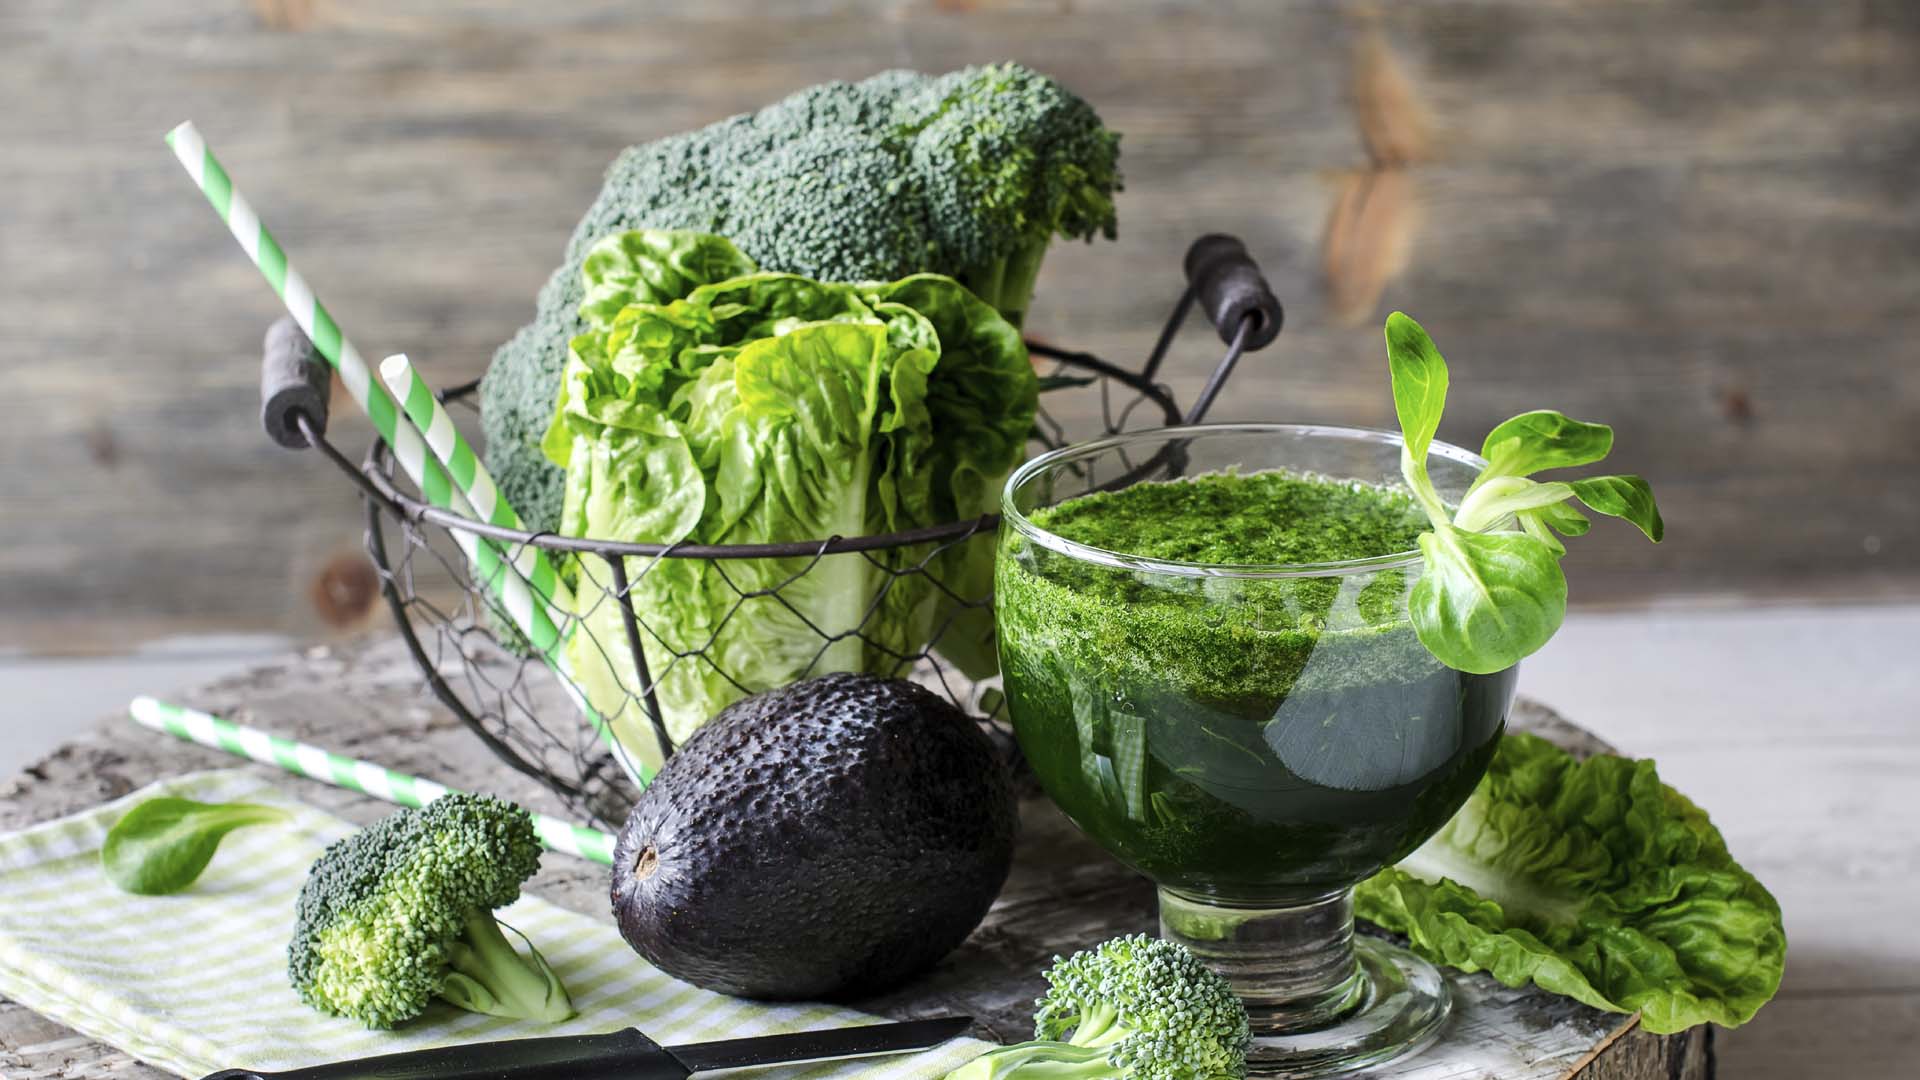 Redirecciona tus hábitos alimenticios y adáptalos a un peculiar método verde a base de casi de una gran variedad de vegetales verdes